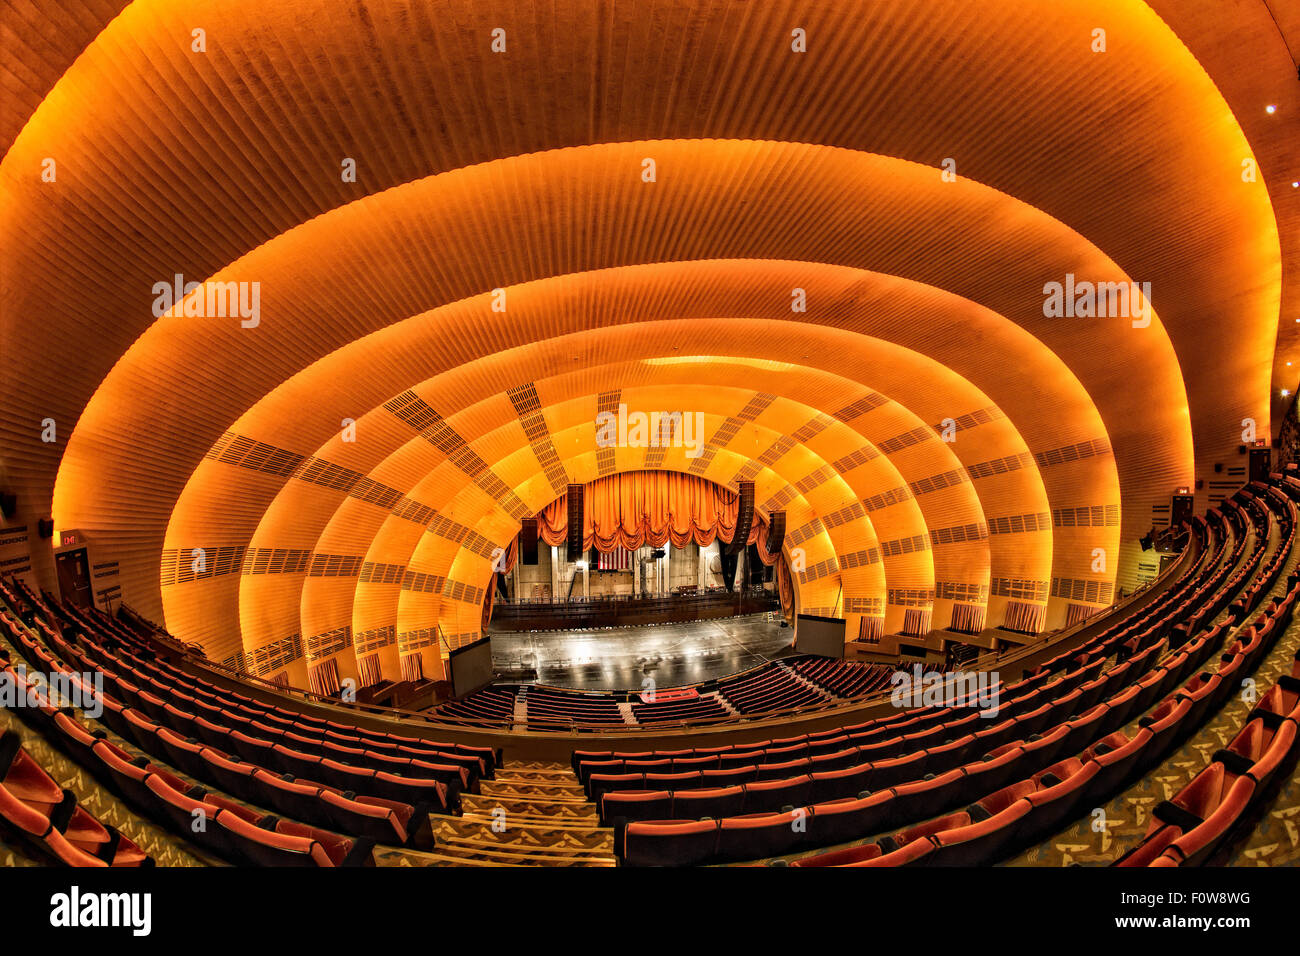 Die Radio City Music Hall - Innenansicht der Art-déco-architektonischen Details des Wahrzeichen der Radio City Music Hall Theater im Theater District von Manhattan in New York City, New York. Stockfoto